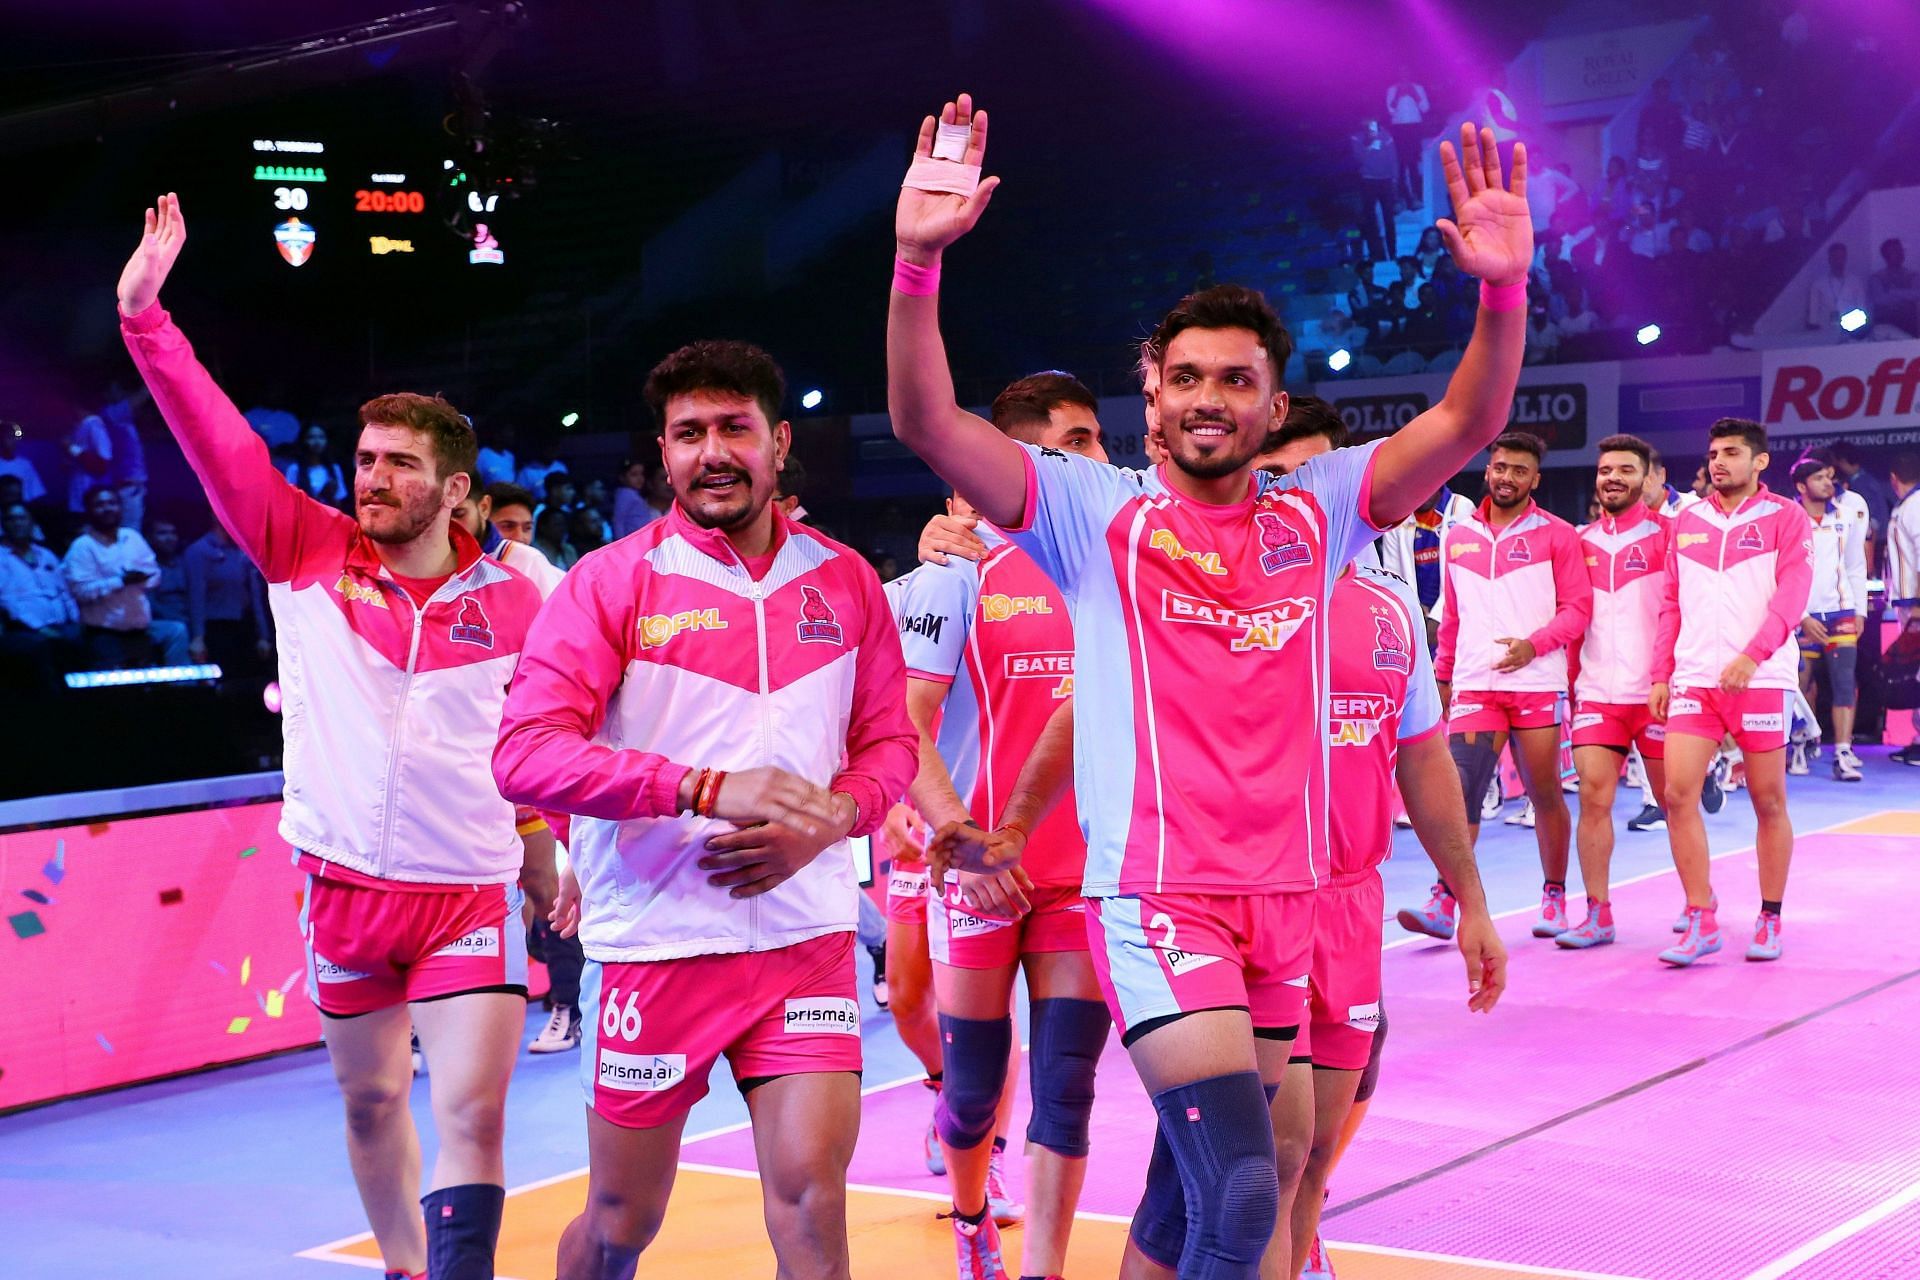 Jaipur Pink Panthers vs Telugu Titans